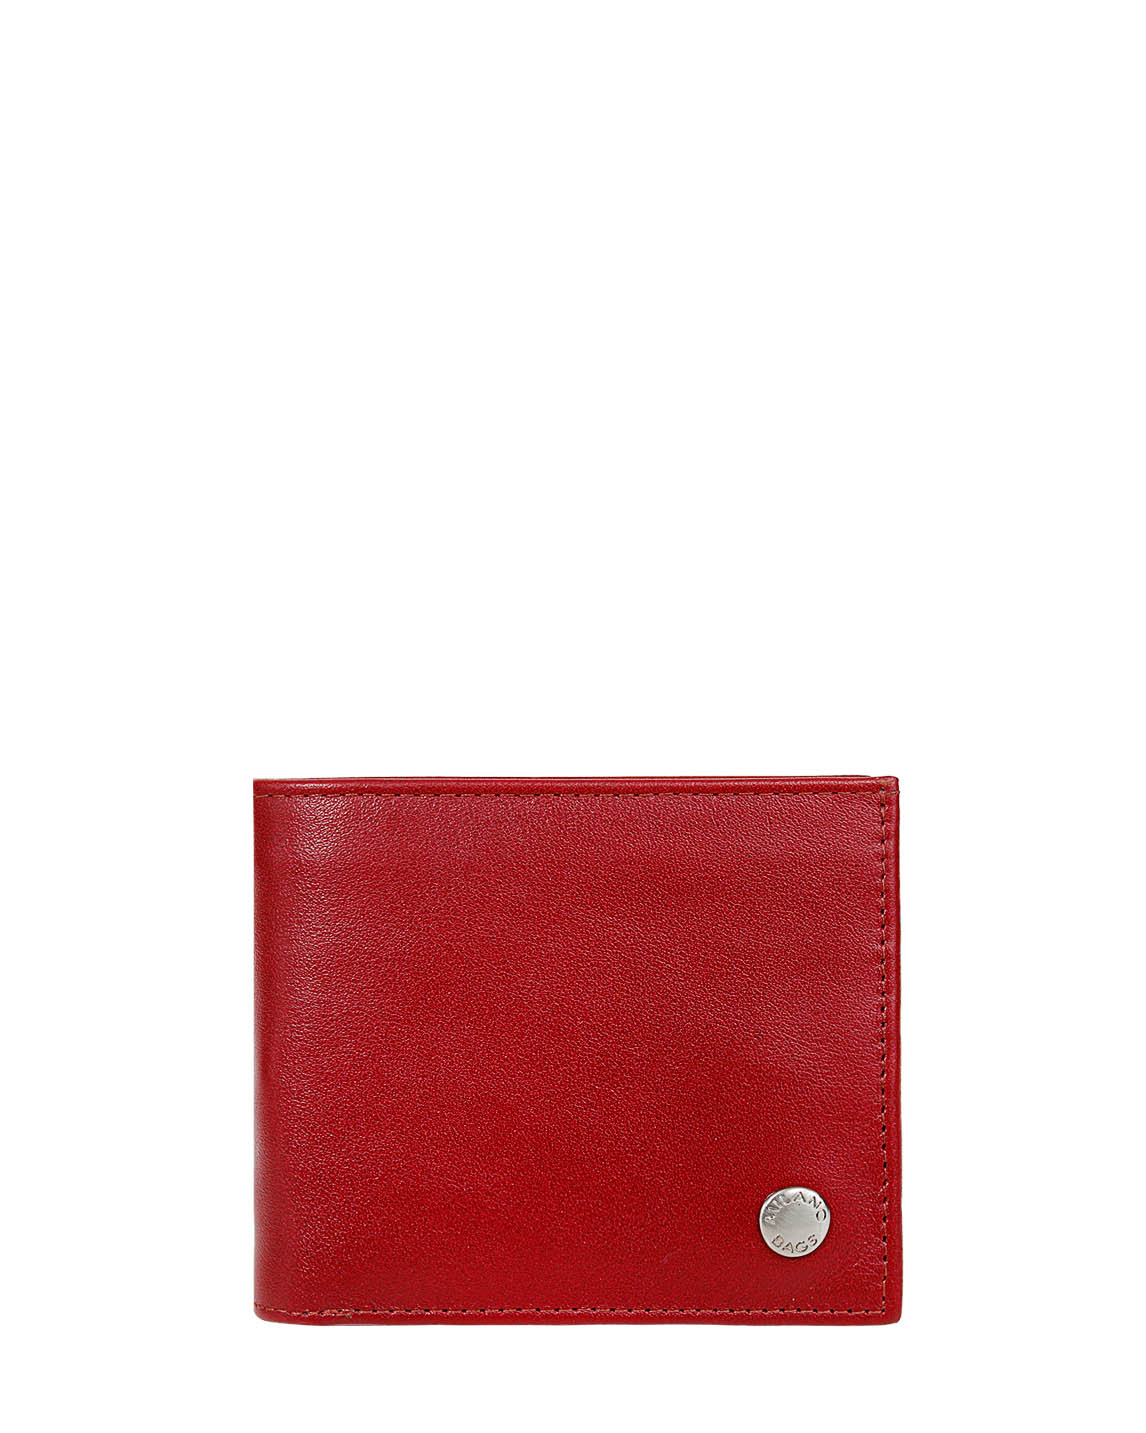 Billetera de Hombre BH-66 Color Rojo